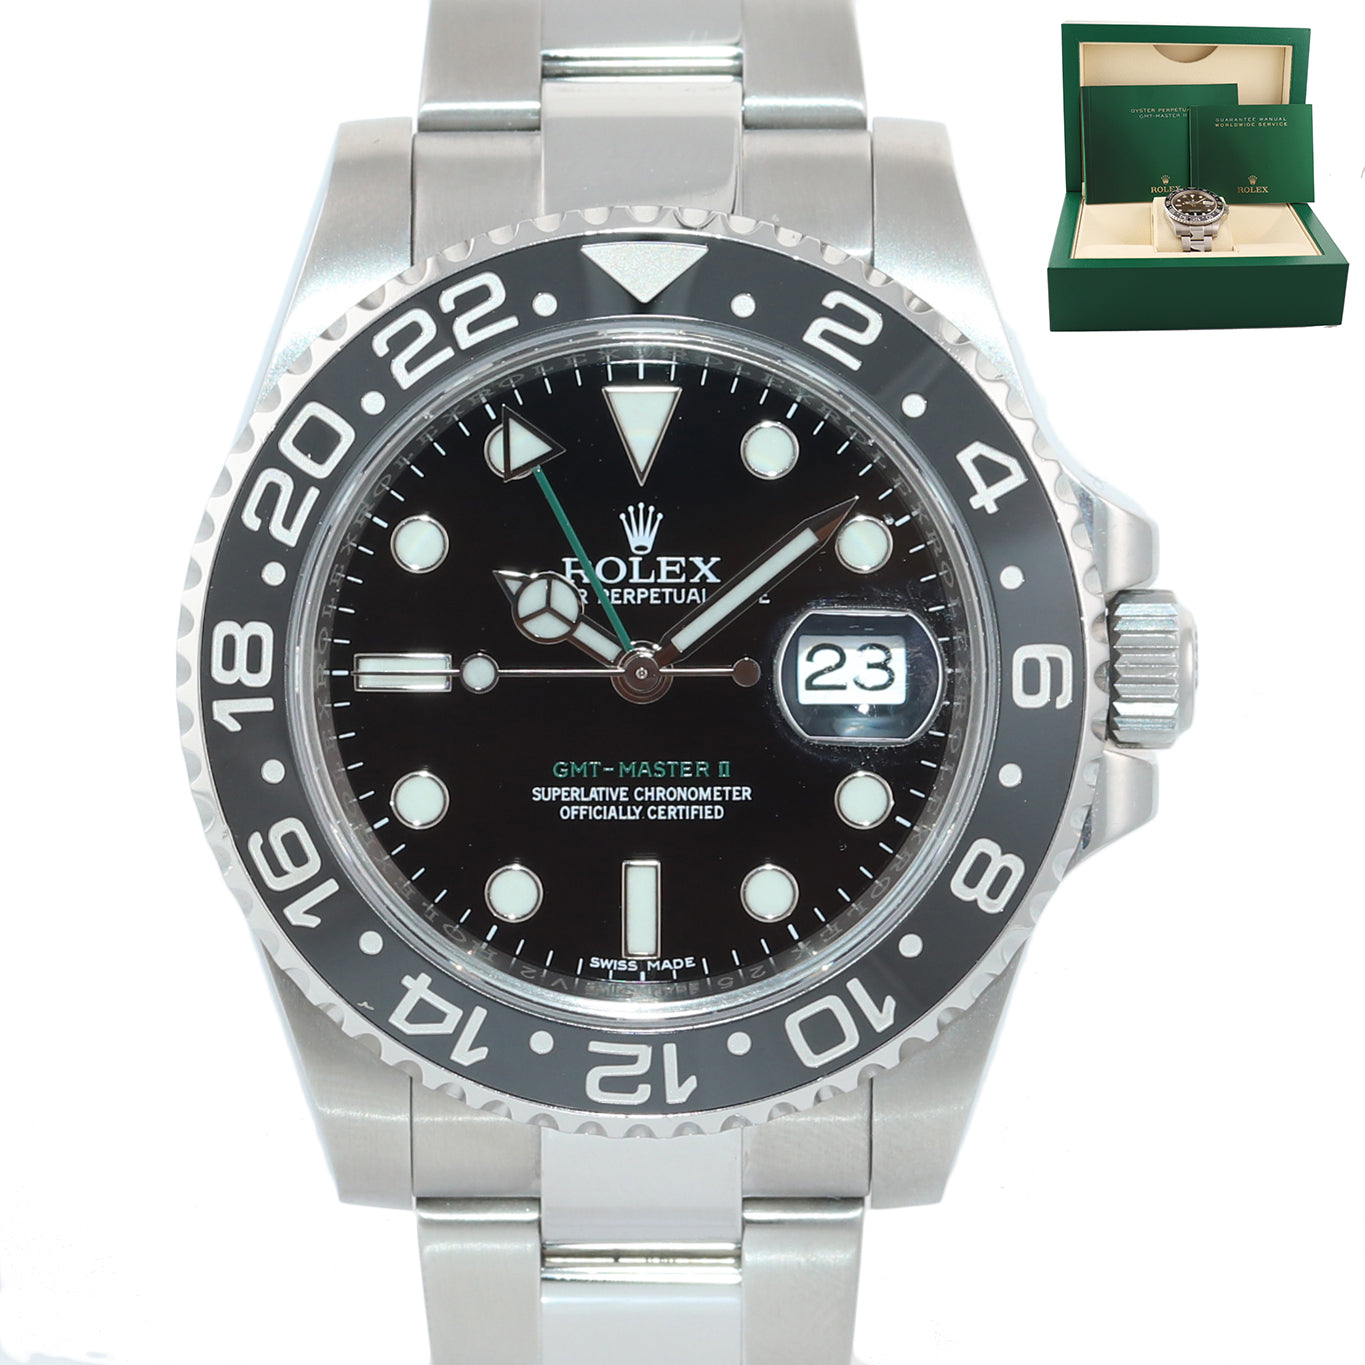 2018 MINT Rolex GMT Master II 116710 Steel Ceramic Black Dial 40mm Watch Box